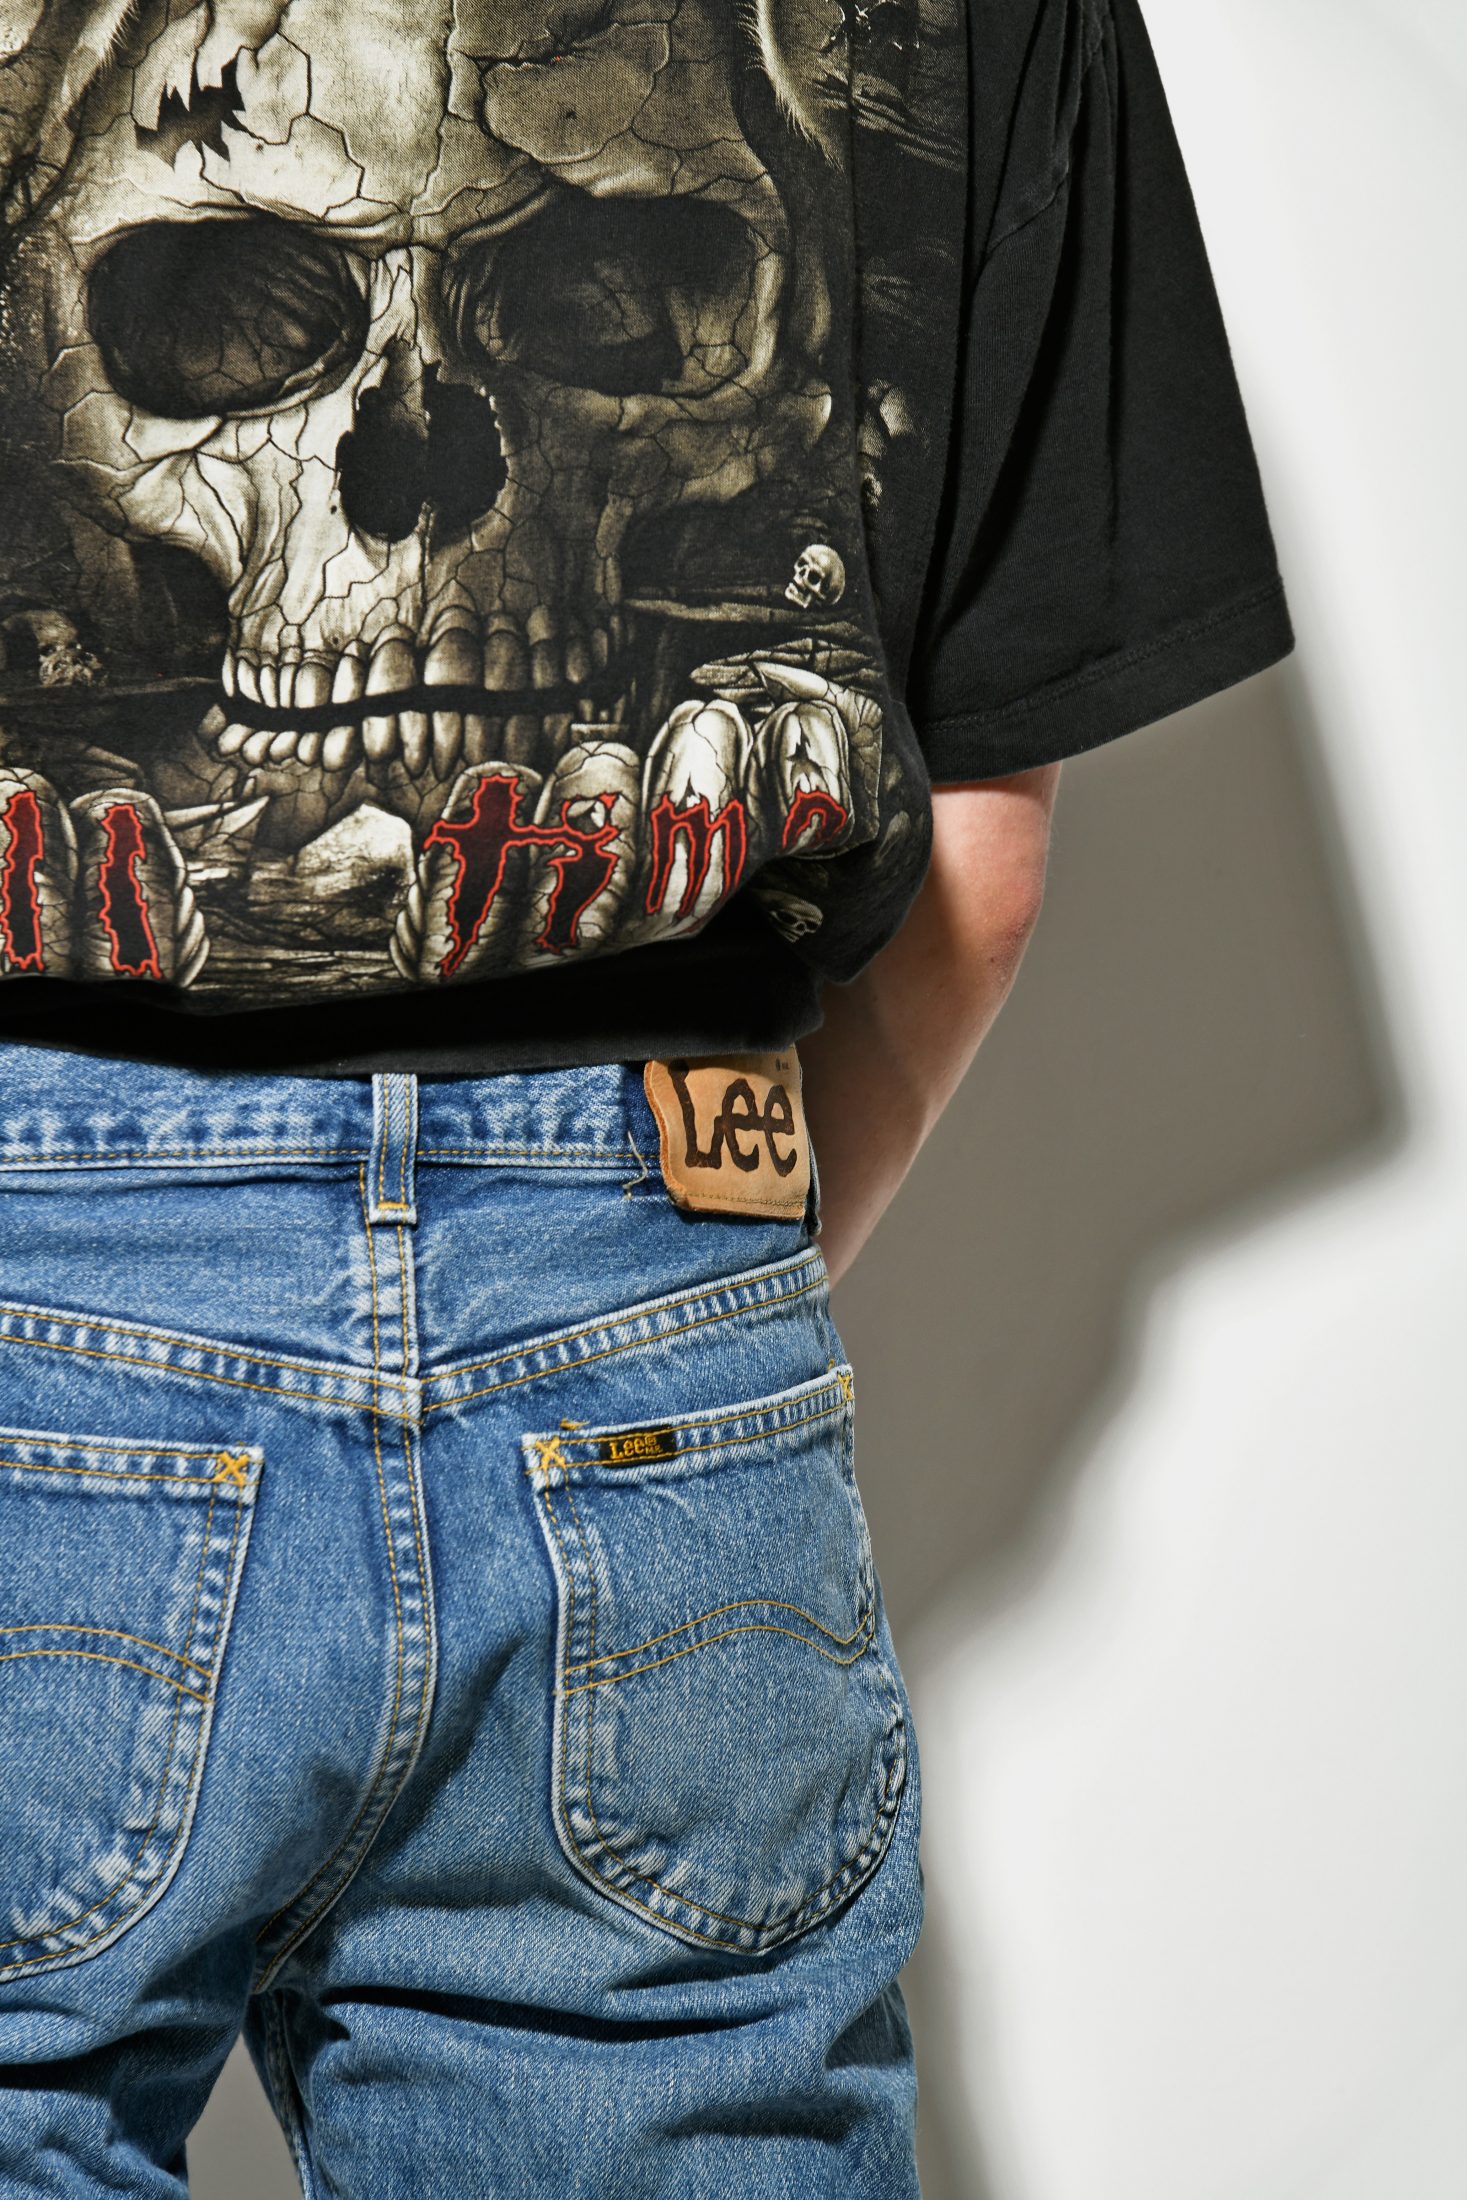 LEE vintage jeans | Vintage clothes online for men